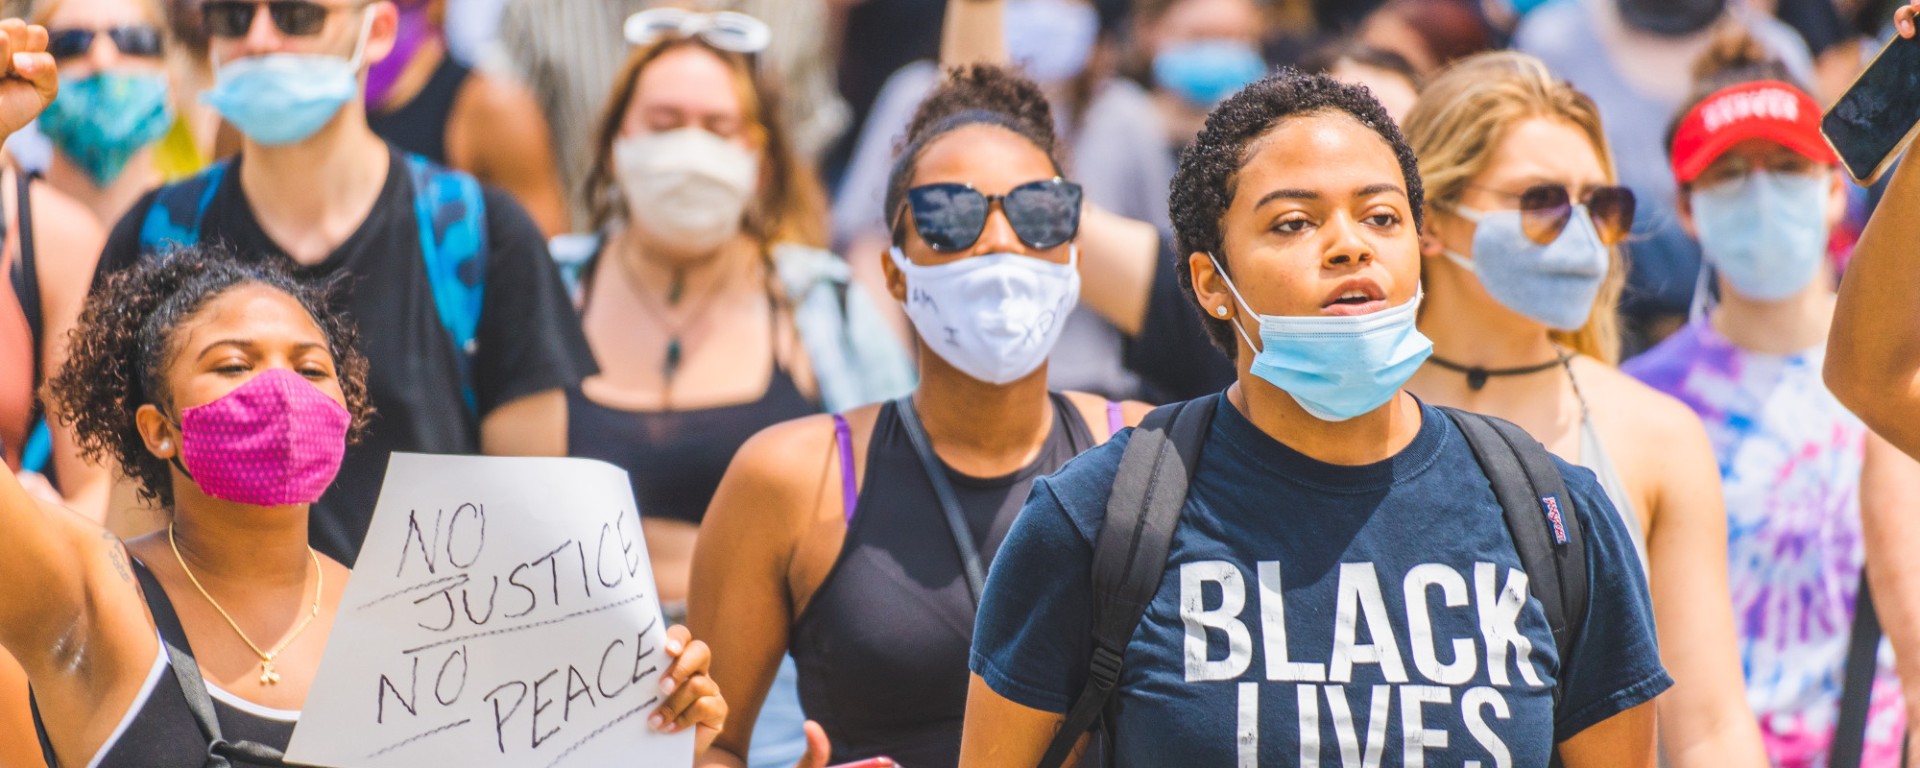 Black Lives Matter Protest. Image: Julian Wan via Unsplash